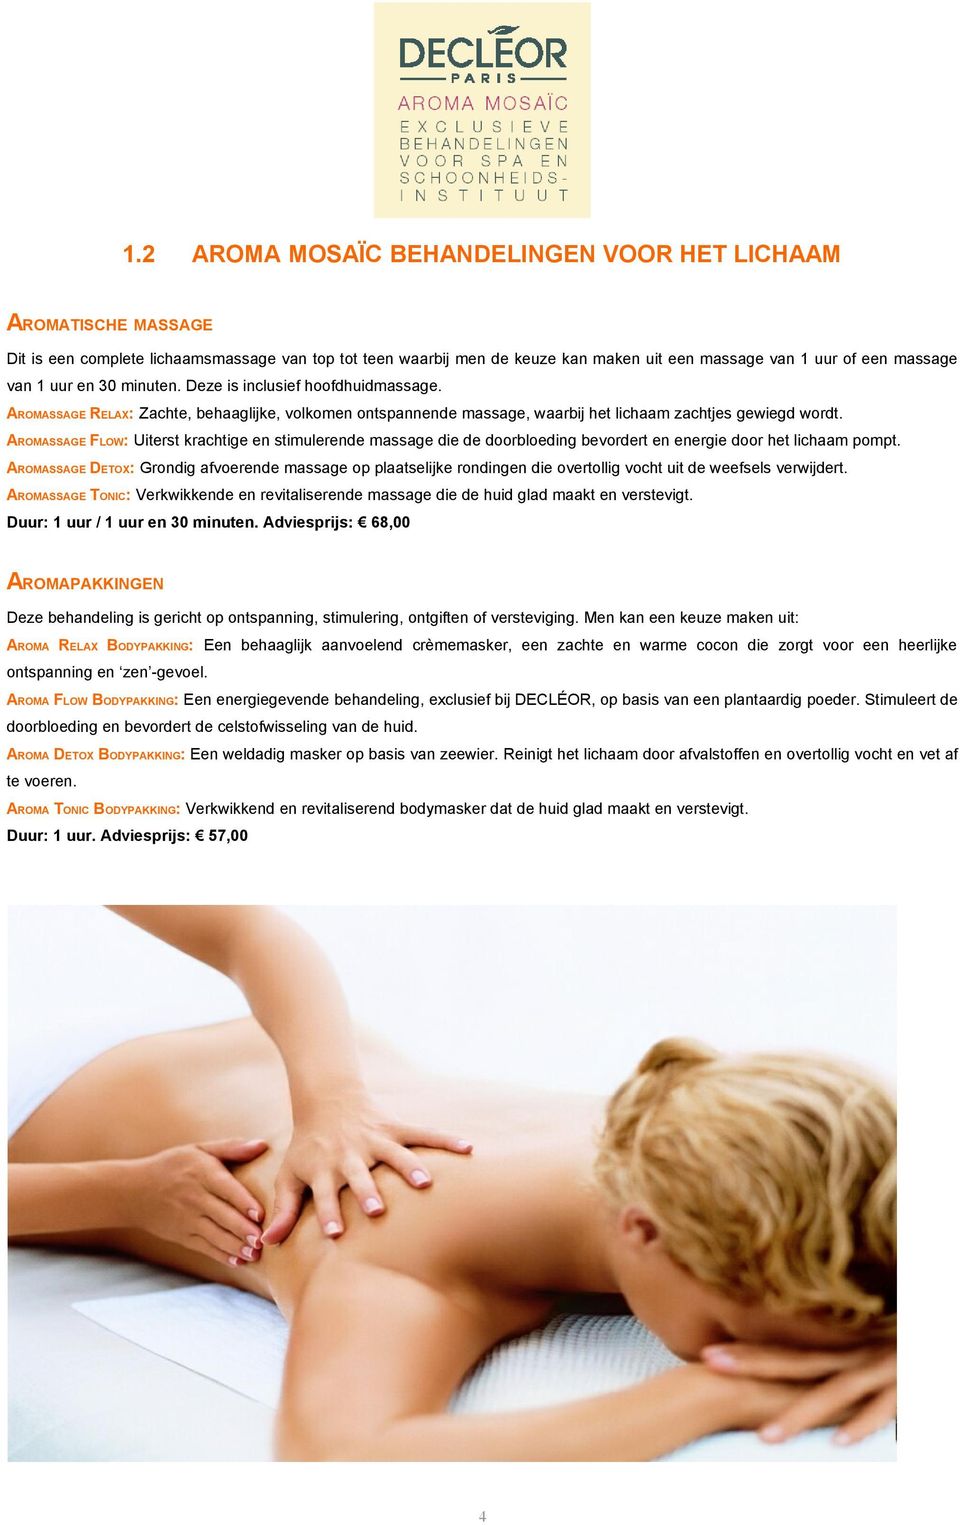 AROMASSAGE FLOW: Uiterst krachtige en stimulerende massage die de doorbloeding bevordert en energie door het lichaam pompt.